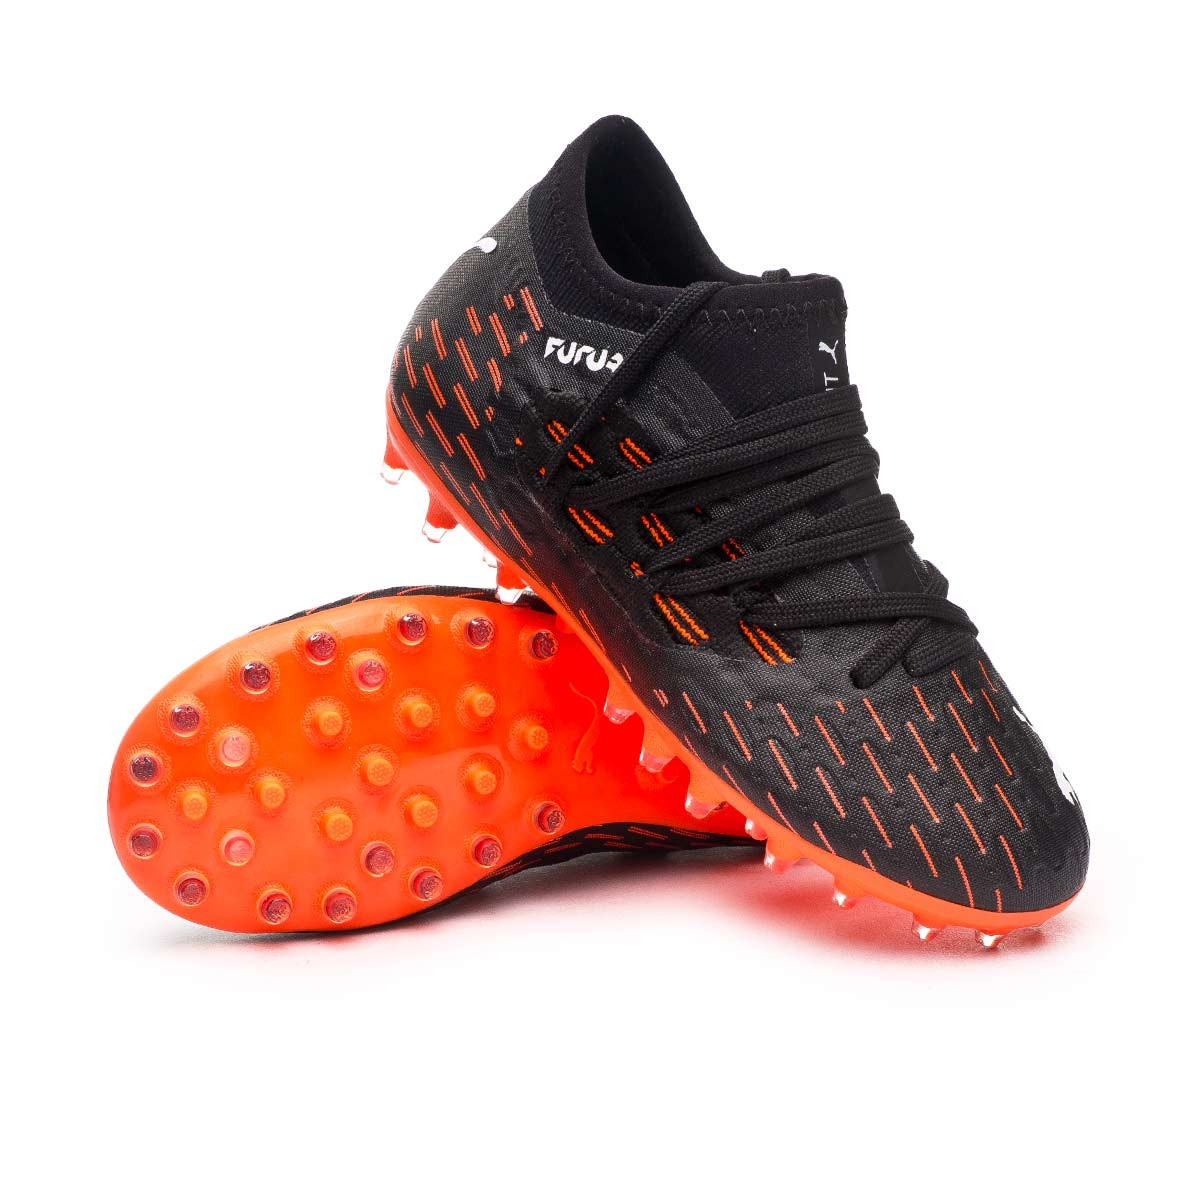 puma football shoes for boys